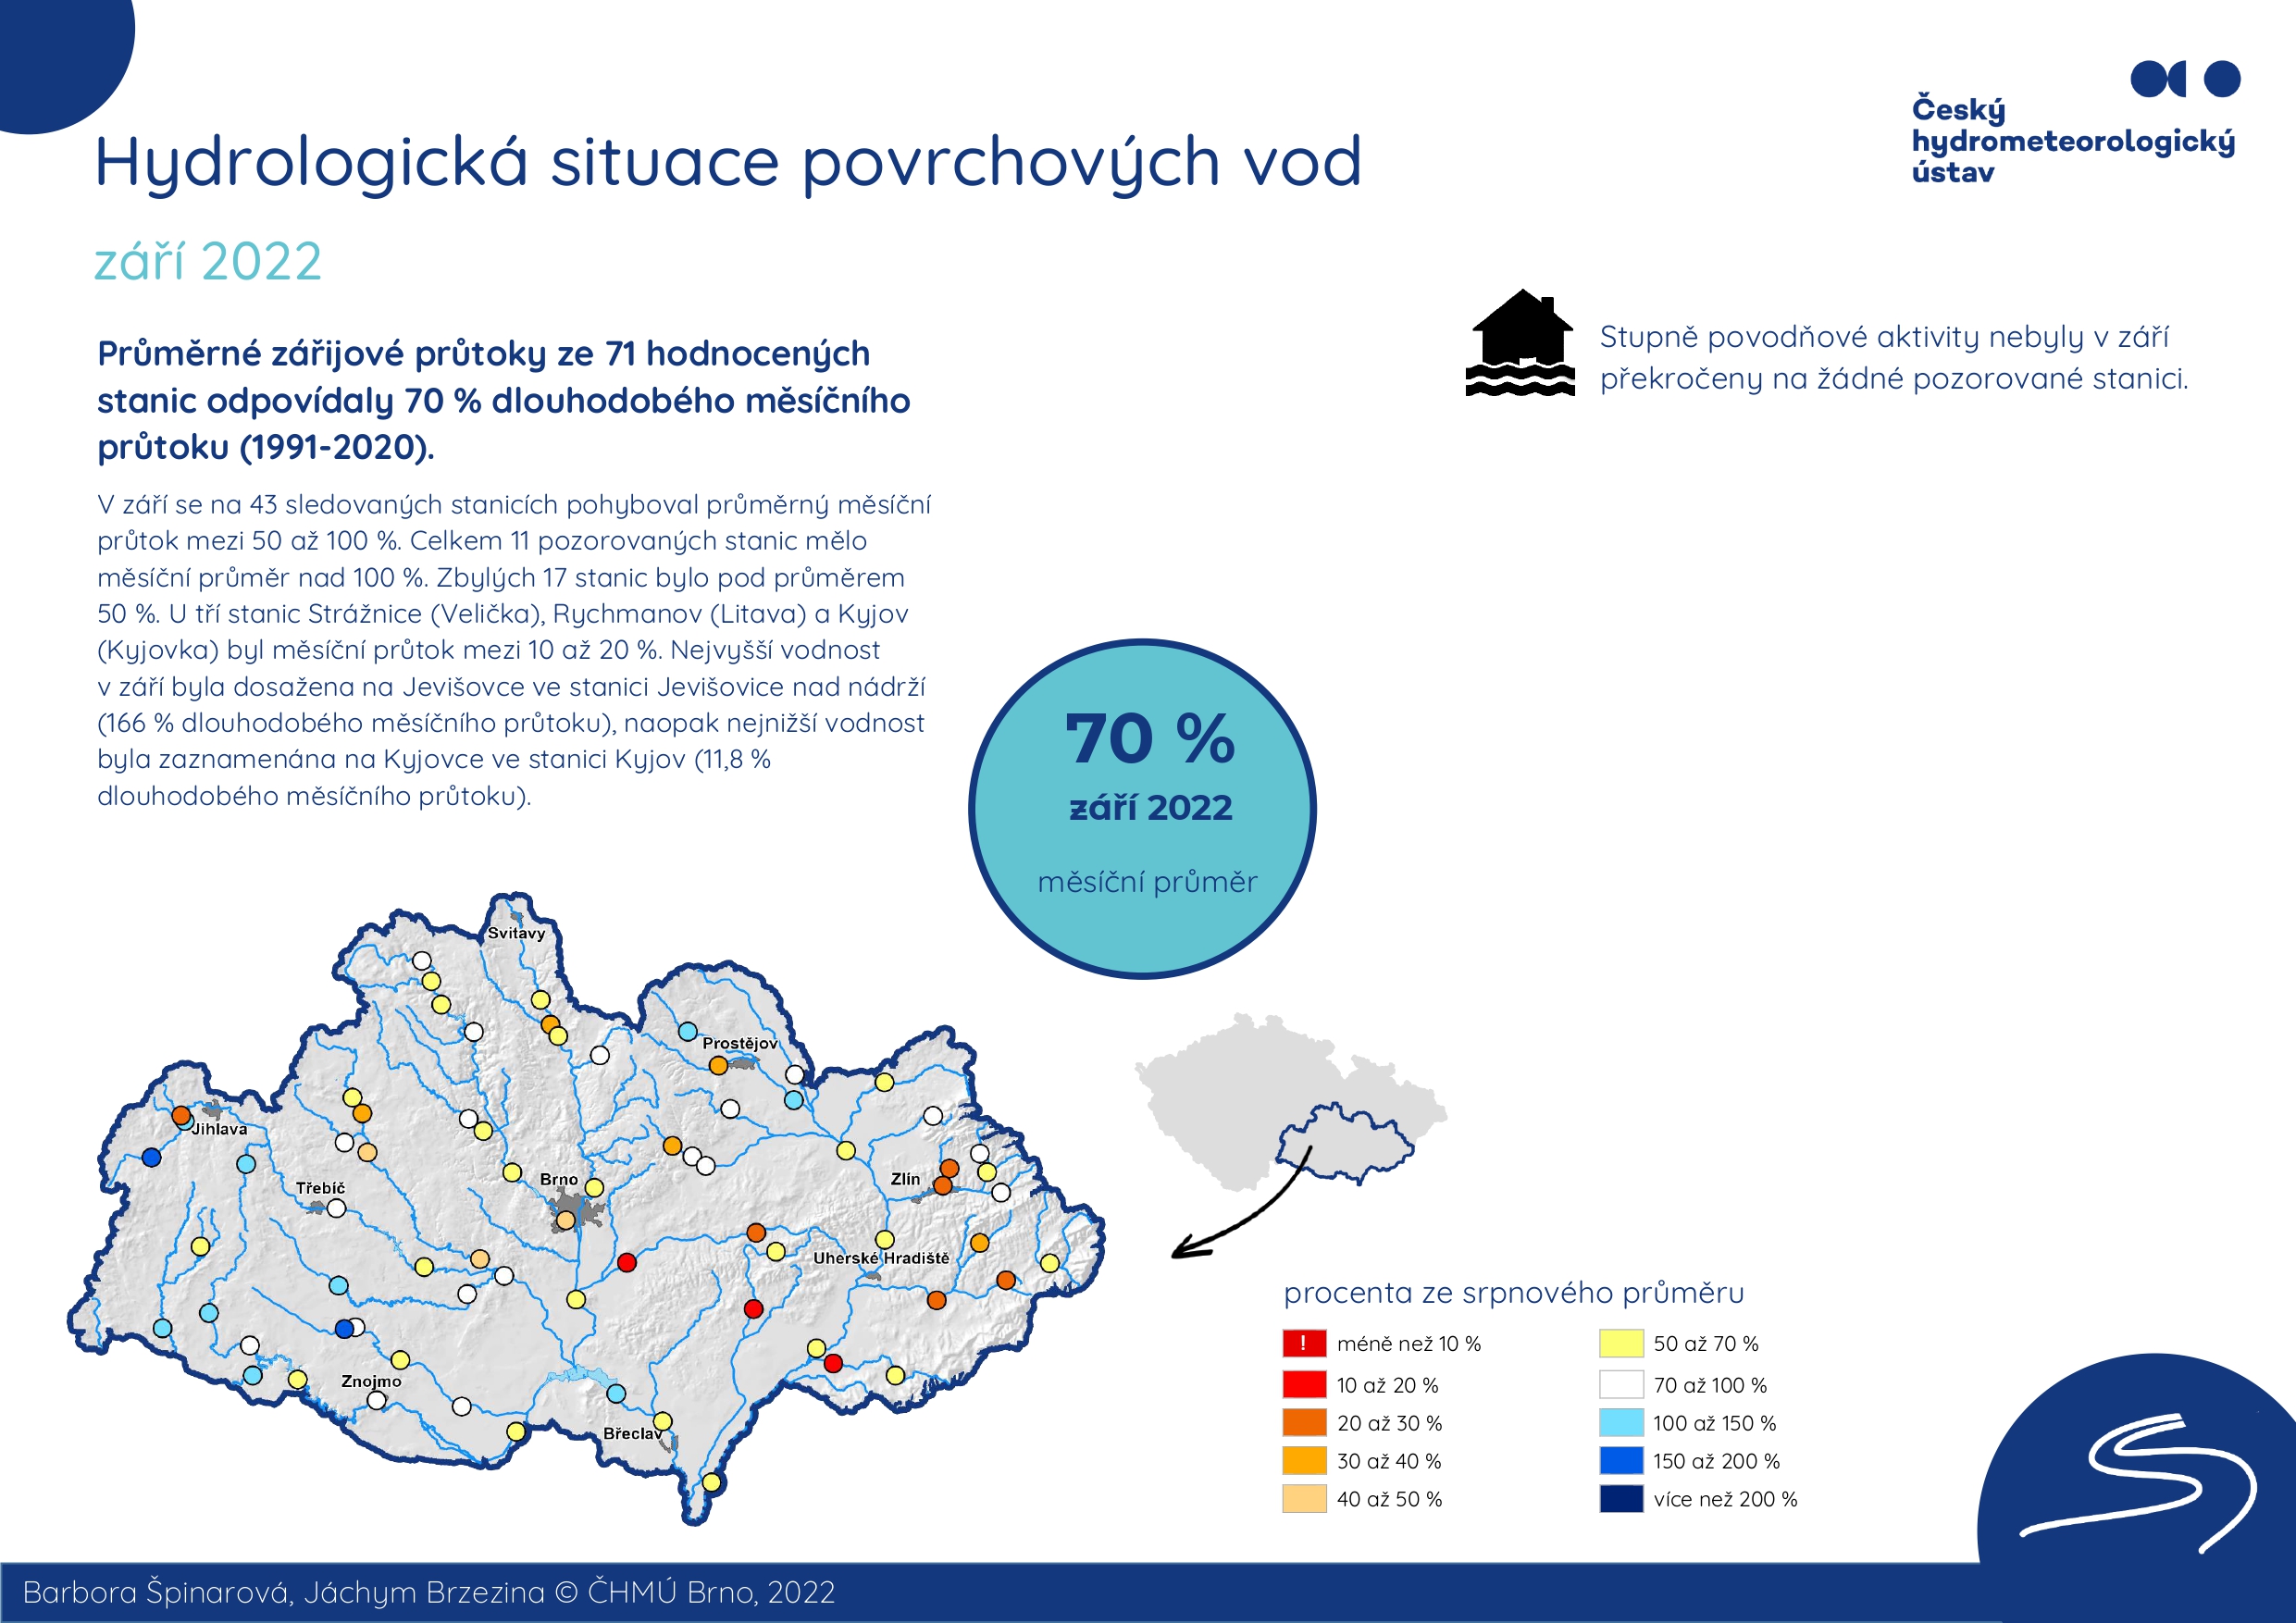 Hydrologická situace povrchových vod na pobočce Brno – září 20221 min čtení